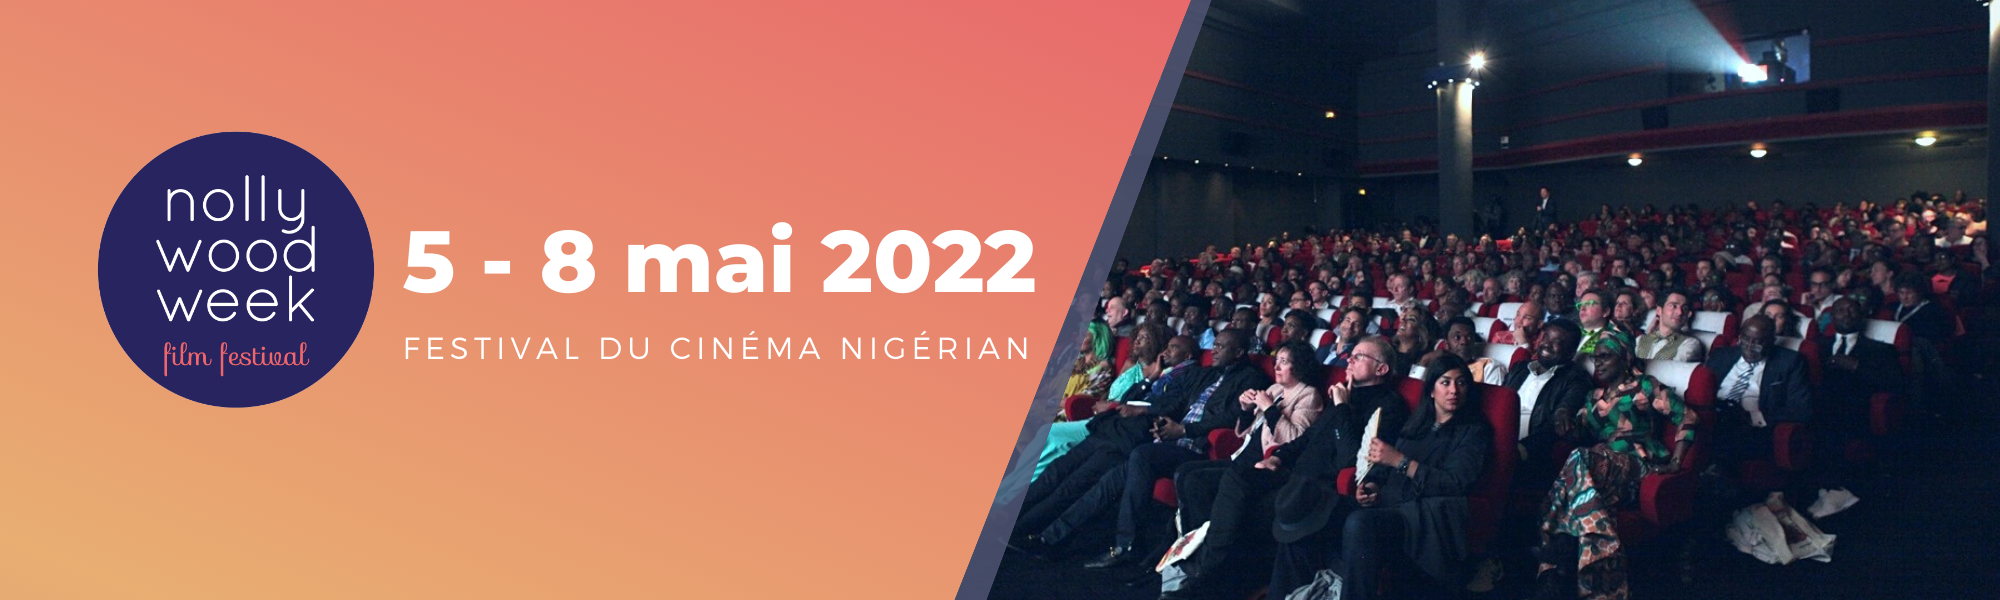 NollywoodWeek Film Festival 2022